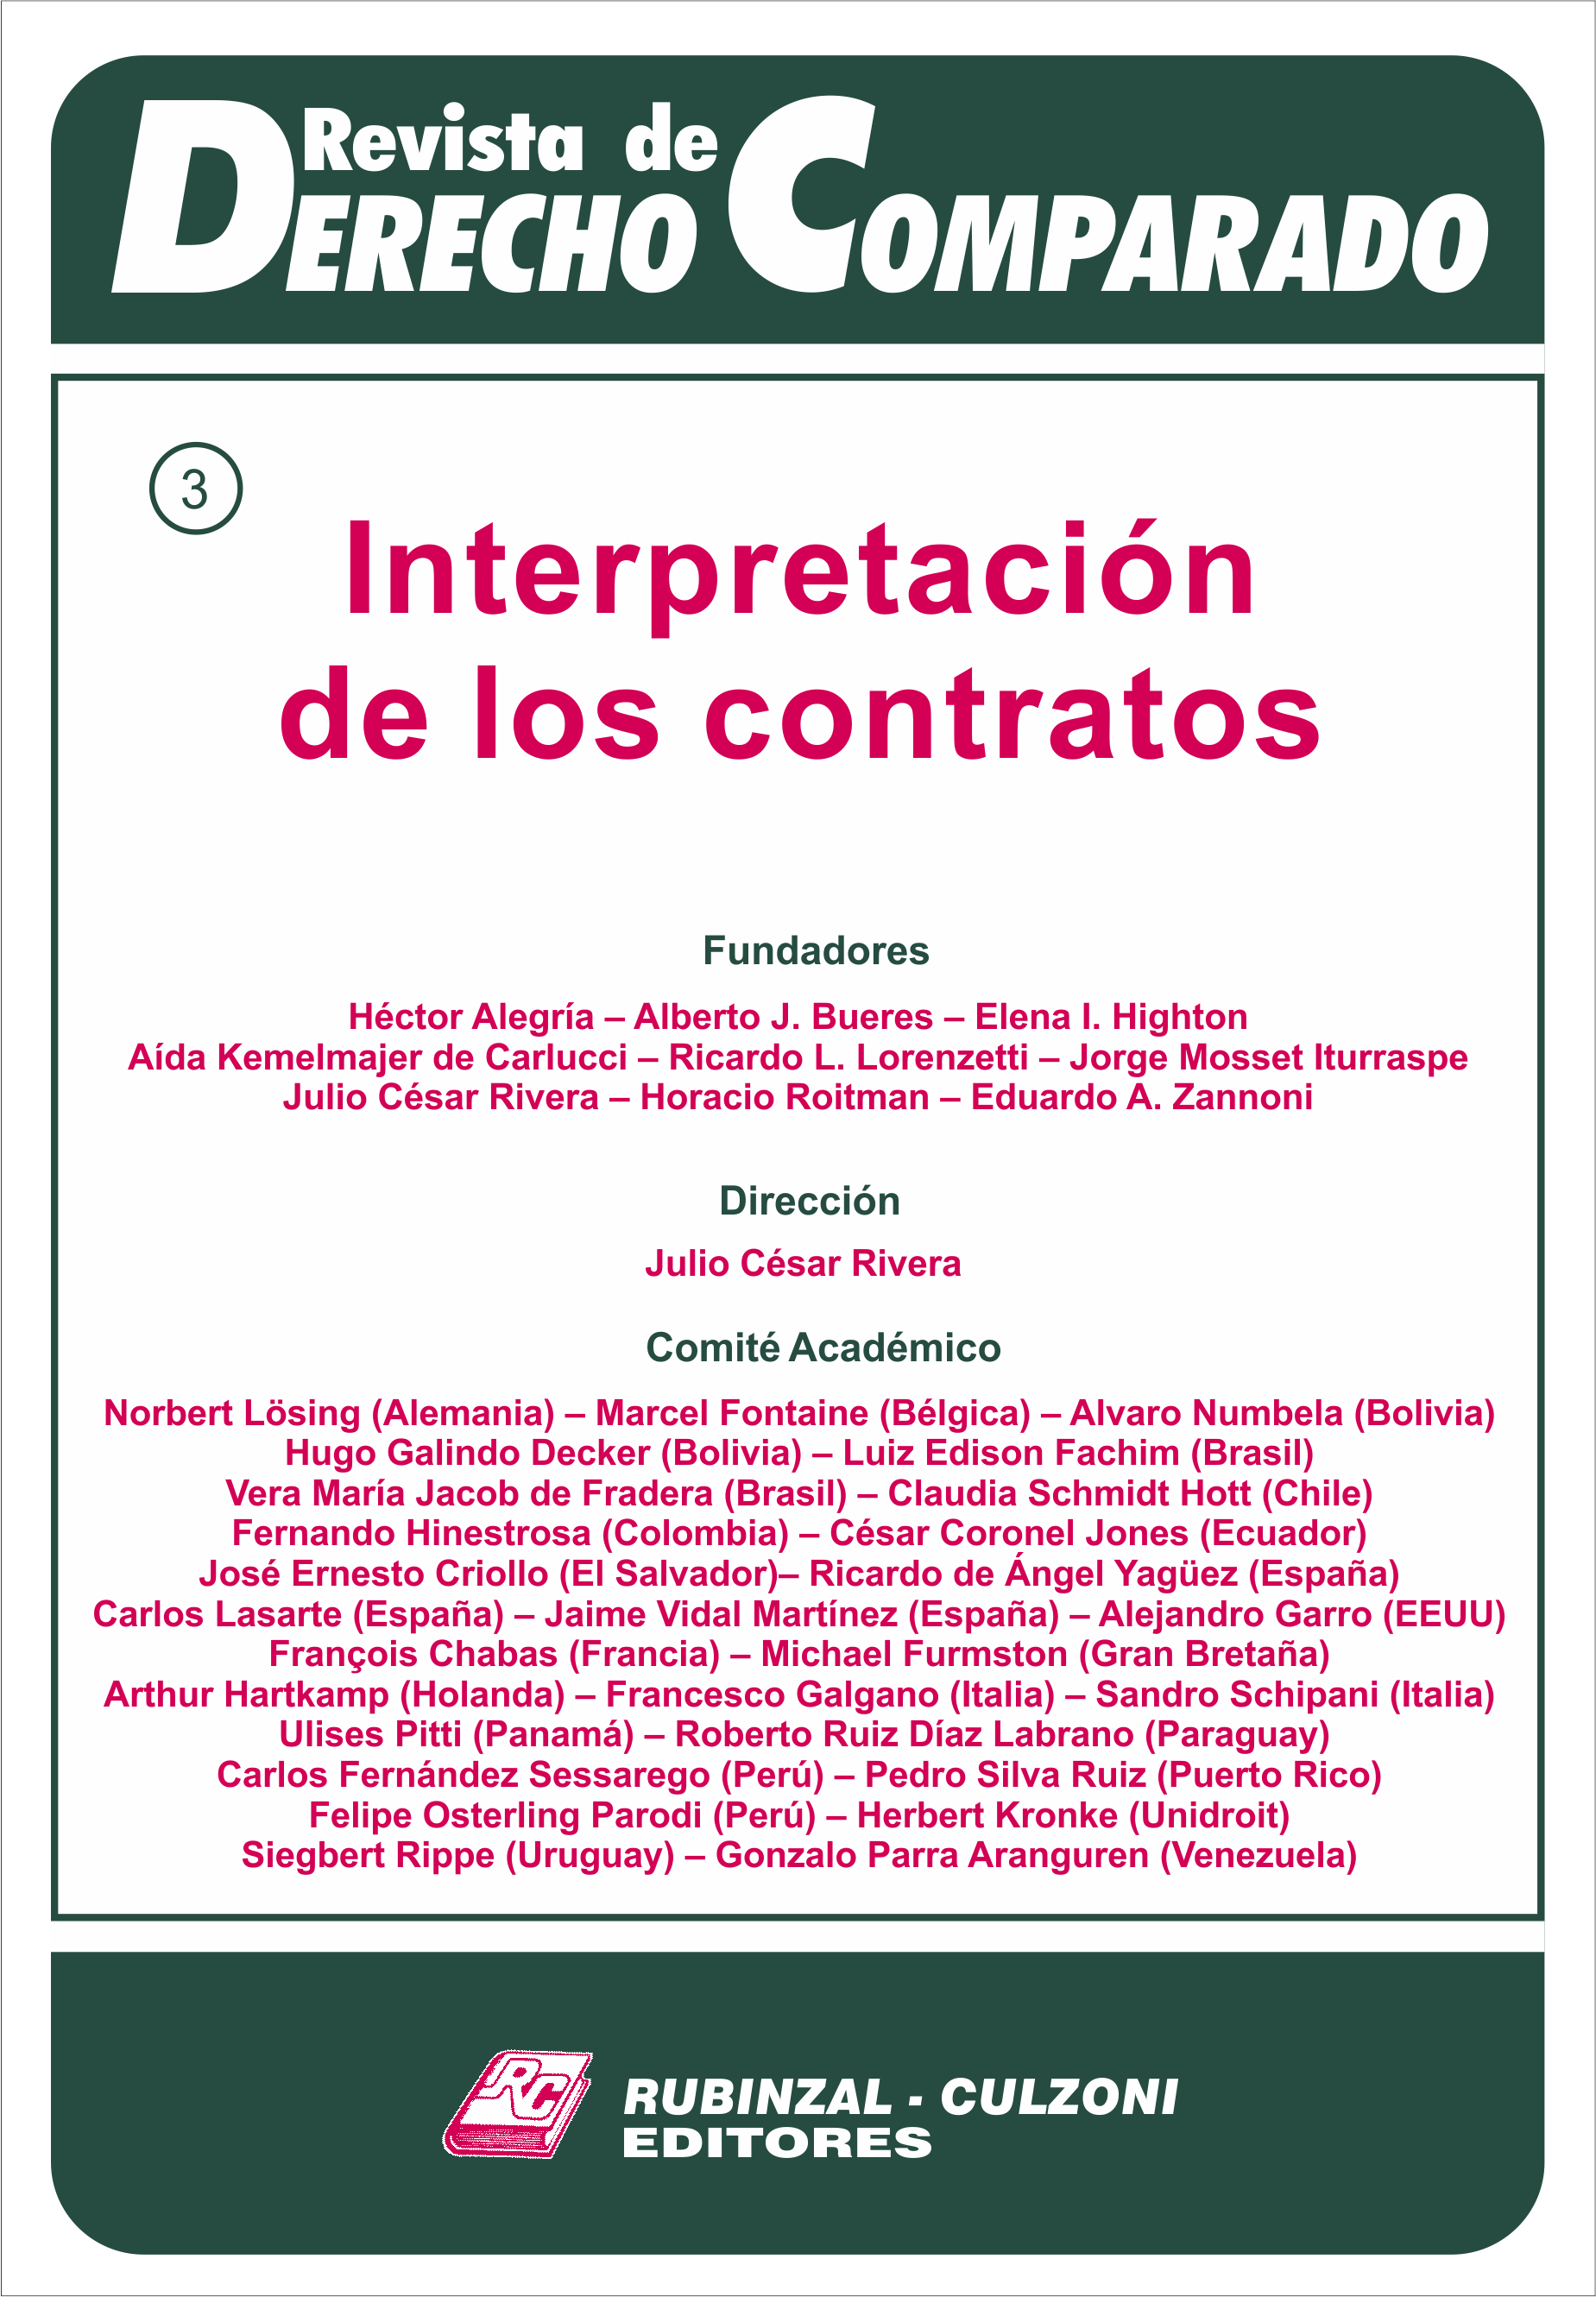 Revista de Derecho Comparado - Doctrina (Interpretación de los contratos).